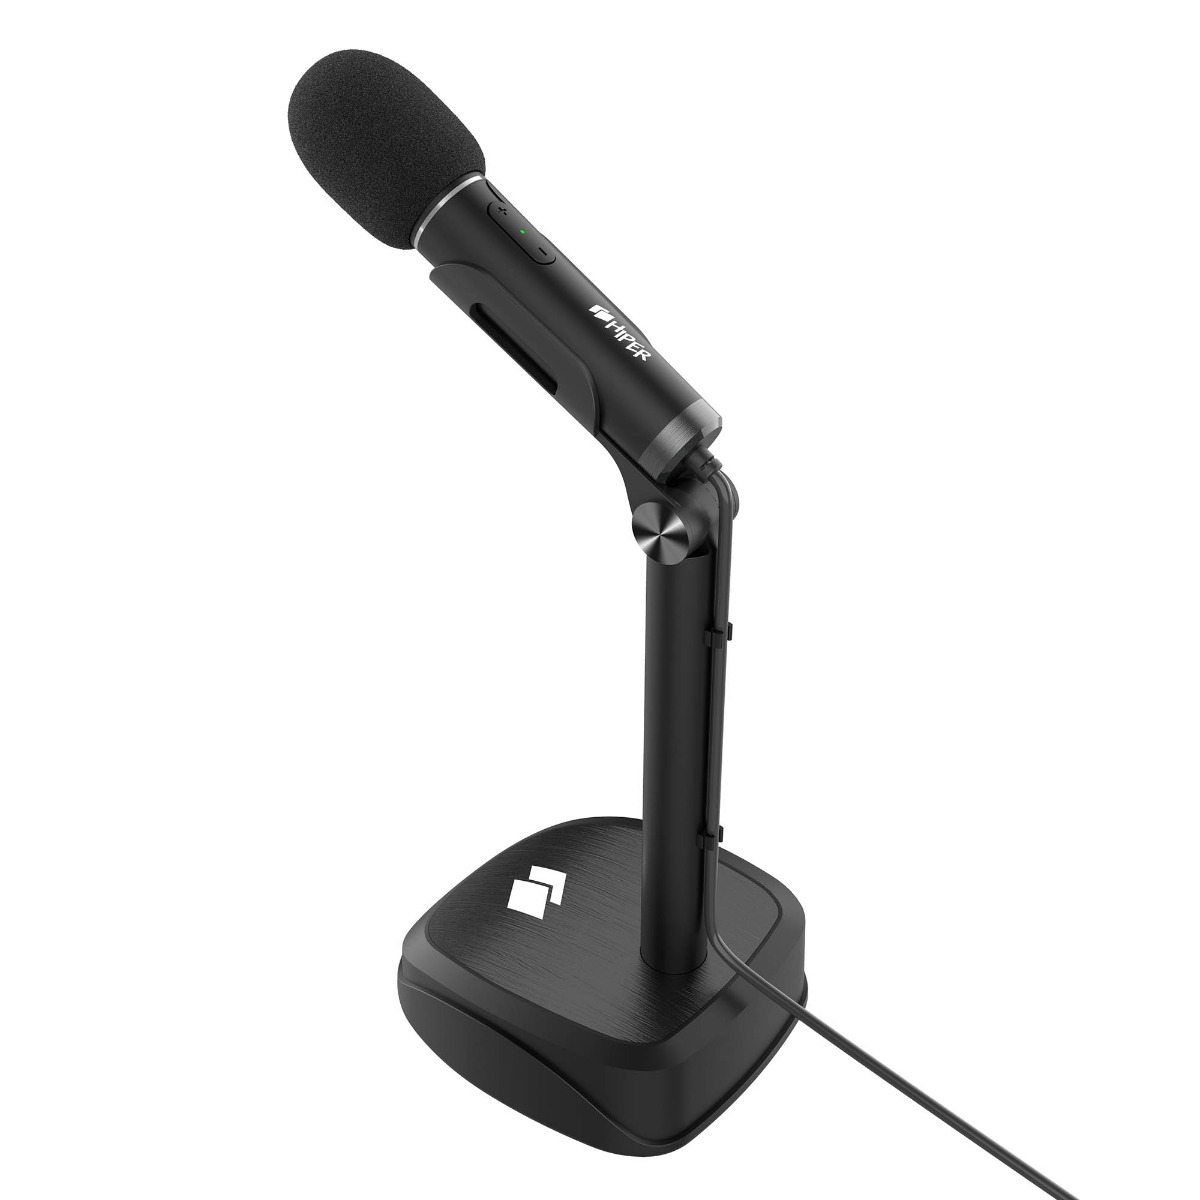 Микрофон HIPER H-M005